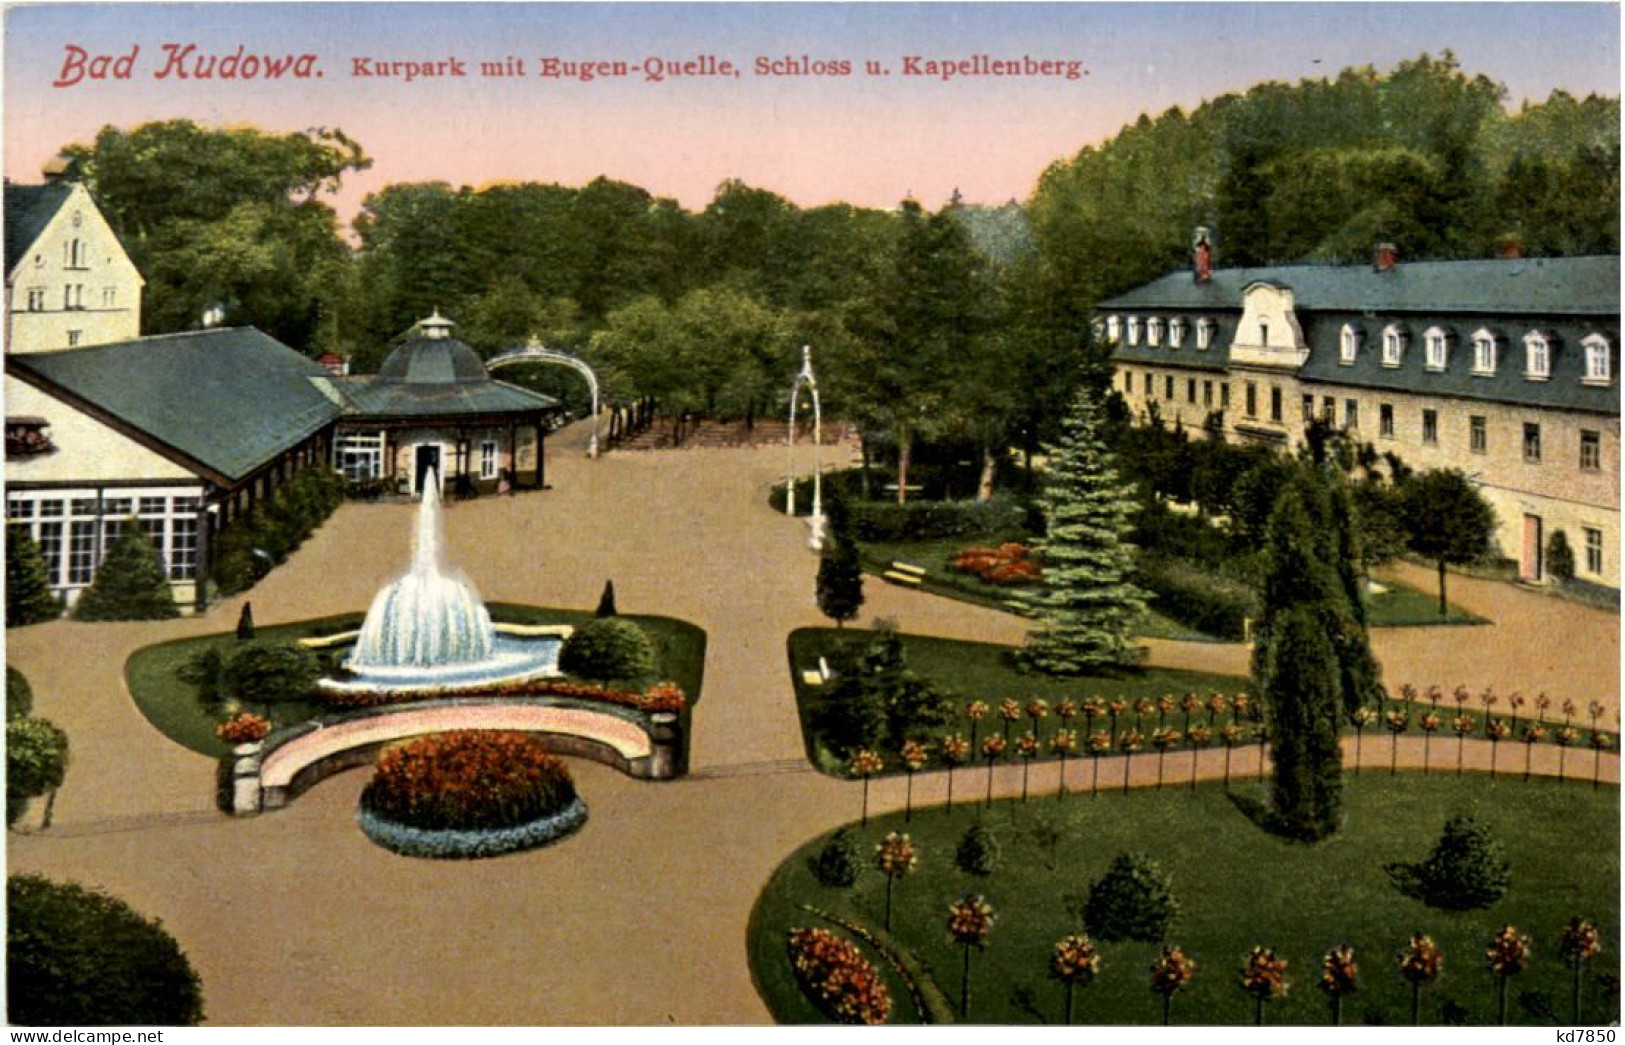 Bad Kudowa - Kurpark - Schlesien